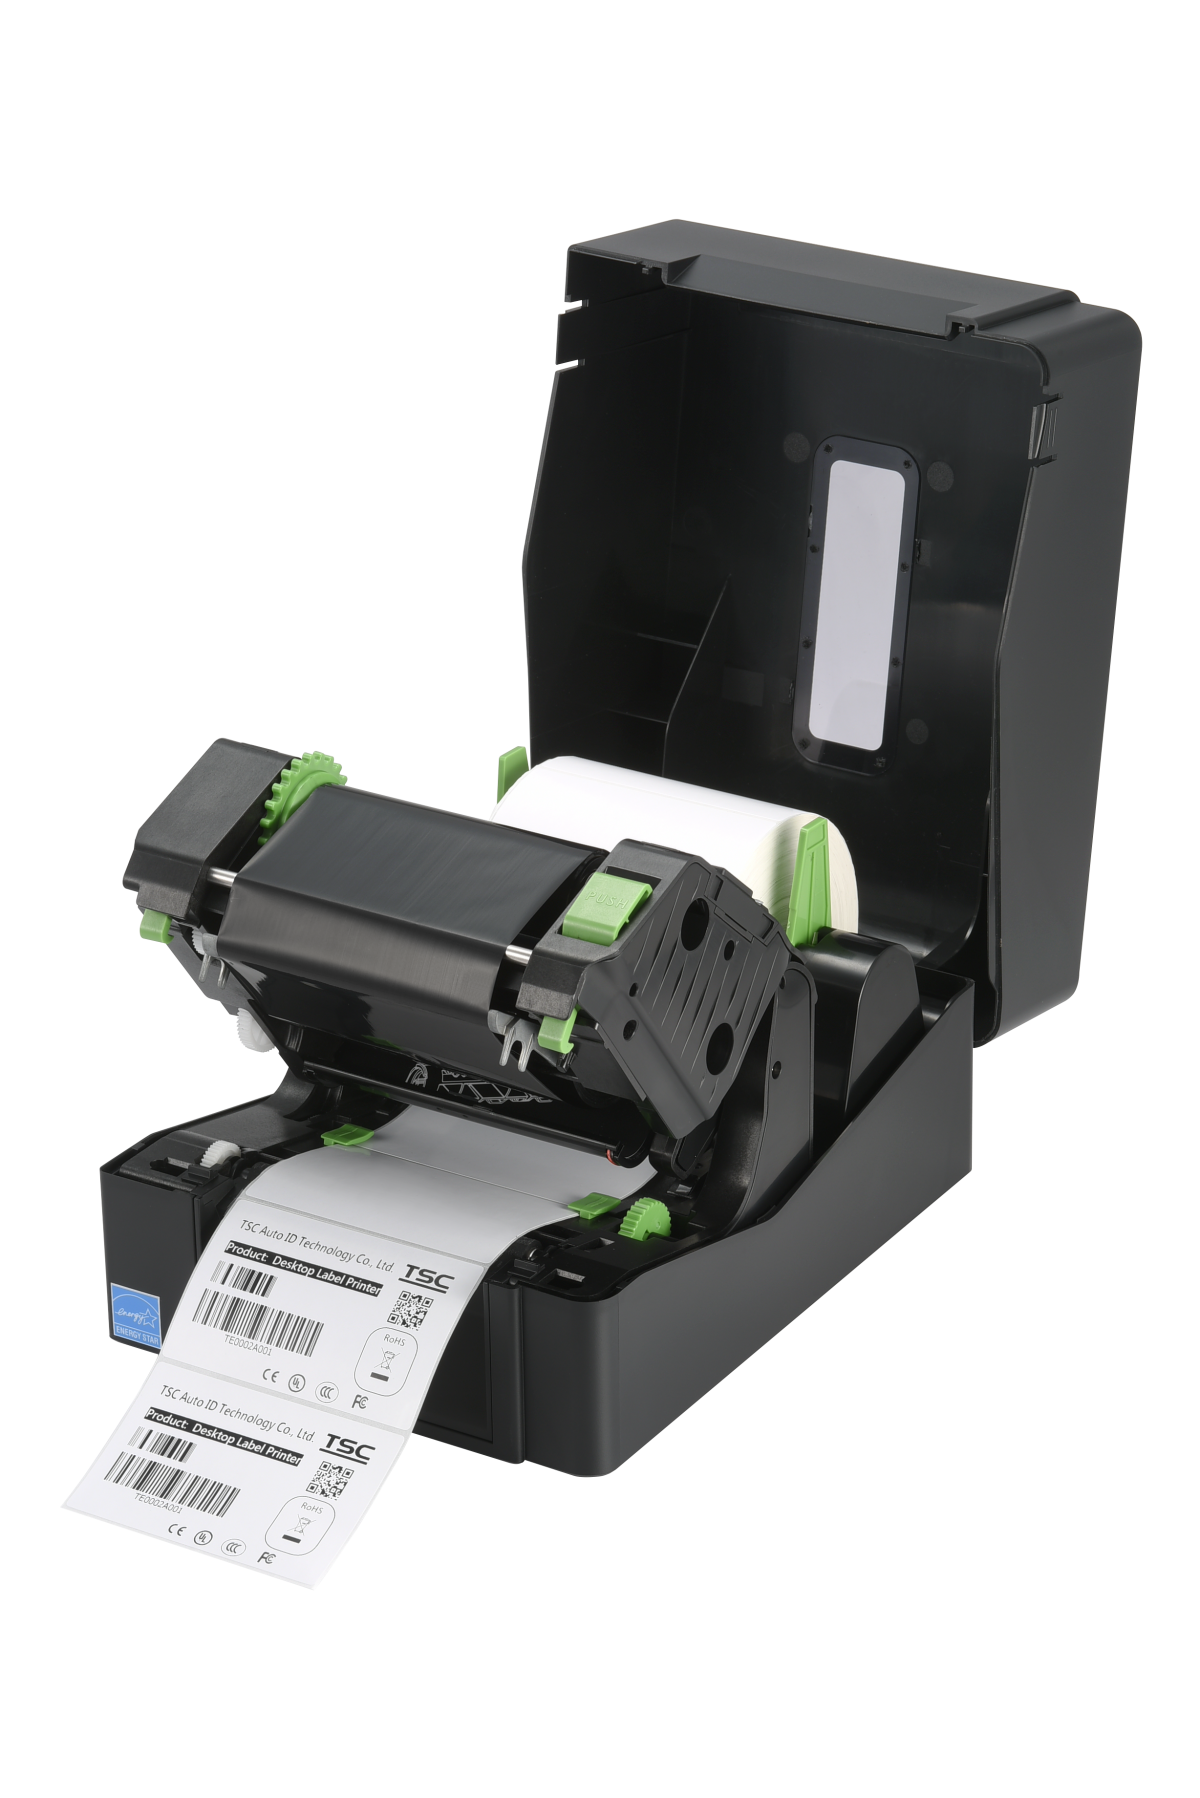 Juoda etikečių spausdintuvas spausdina etiketę su brūkšniniais kodais ir tekstu.